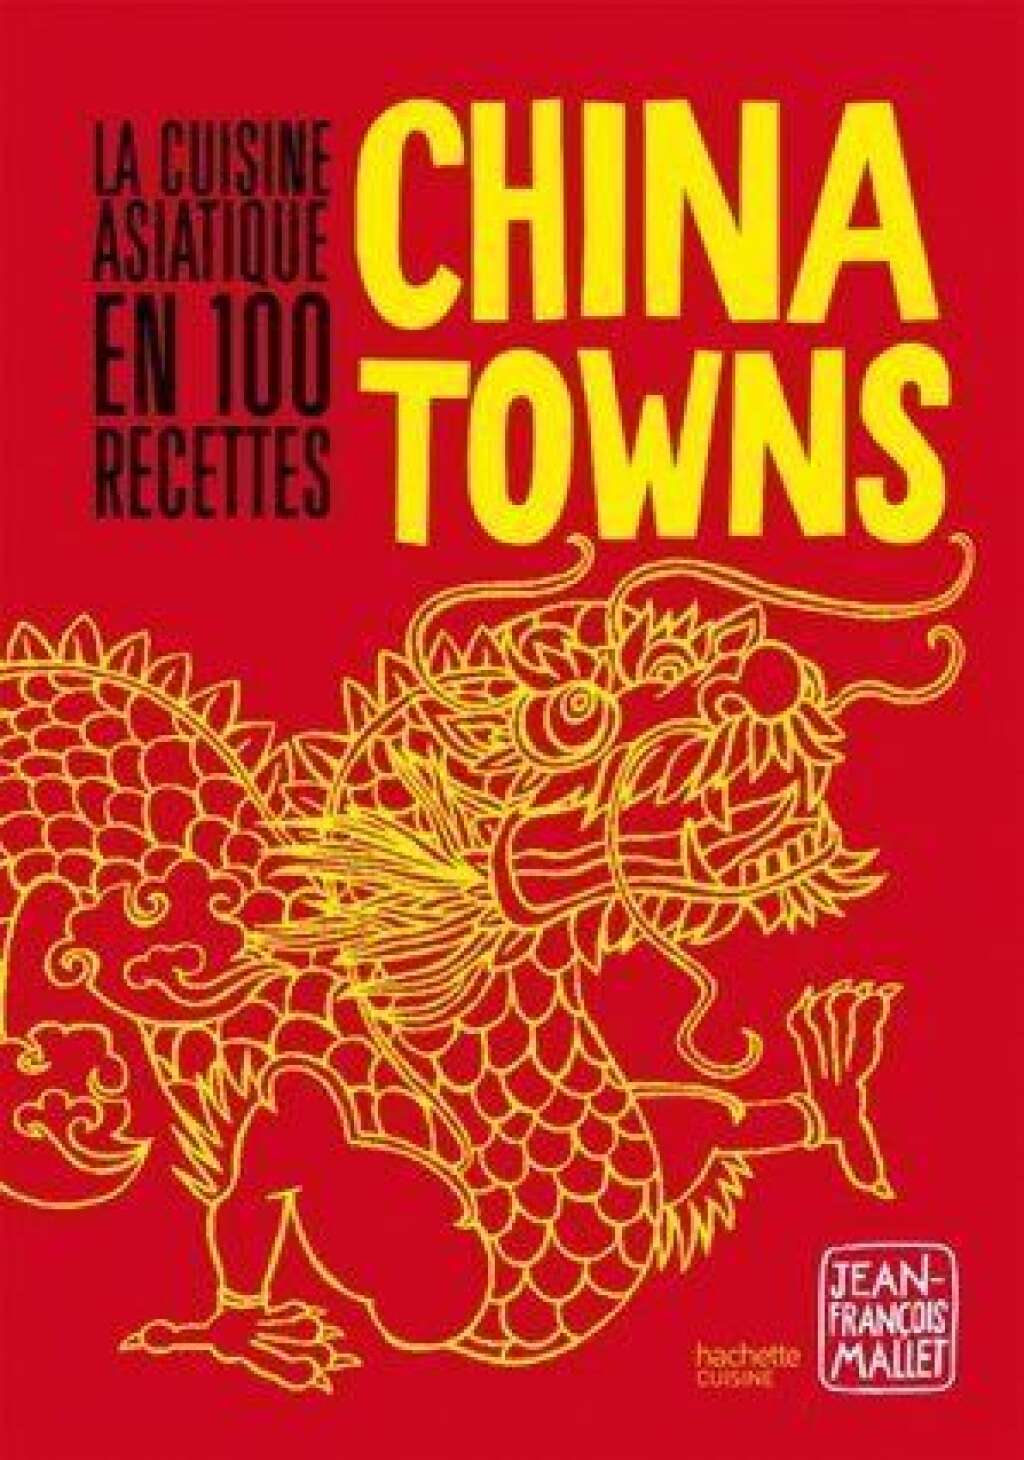 - Recettes et photos extraites de l'ouvrage Chinatowns de Jean-François Mallet paru chez Hachette Cuisine